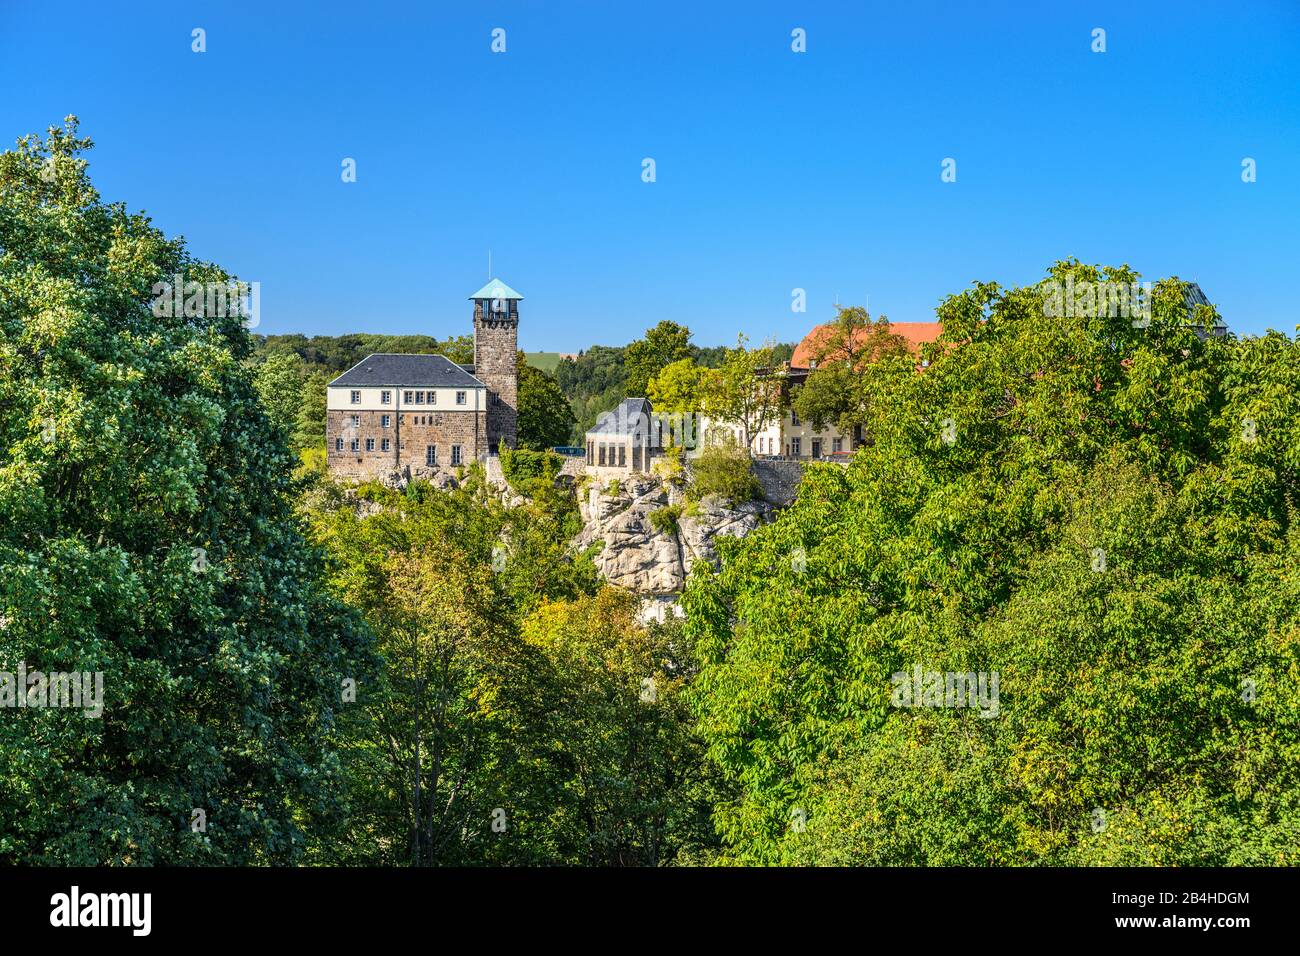 Deutschland, Sachsen, Sächsische Schweiz, Hohnstein, Burg Hohnstein Stock Photo